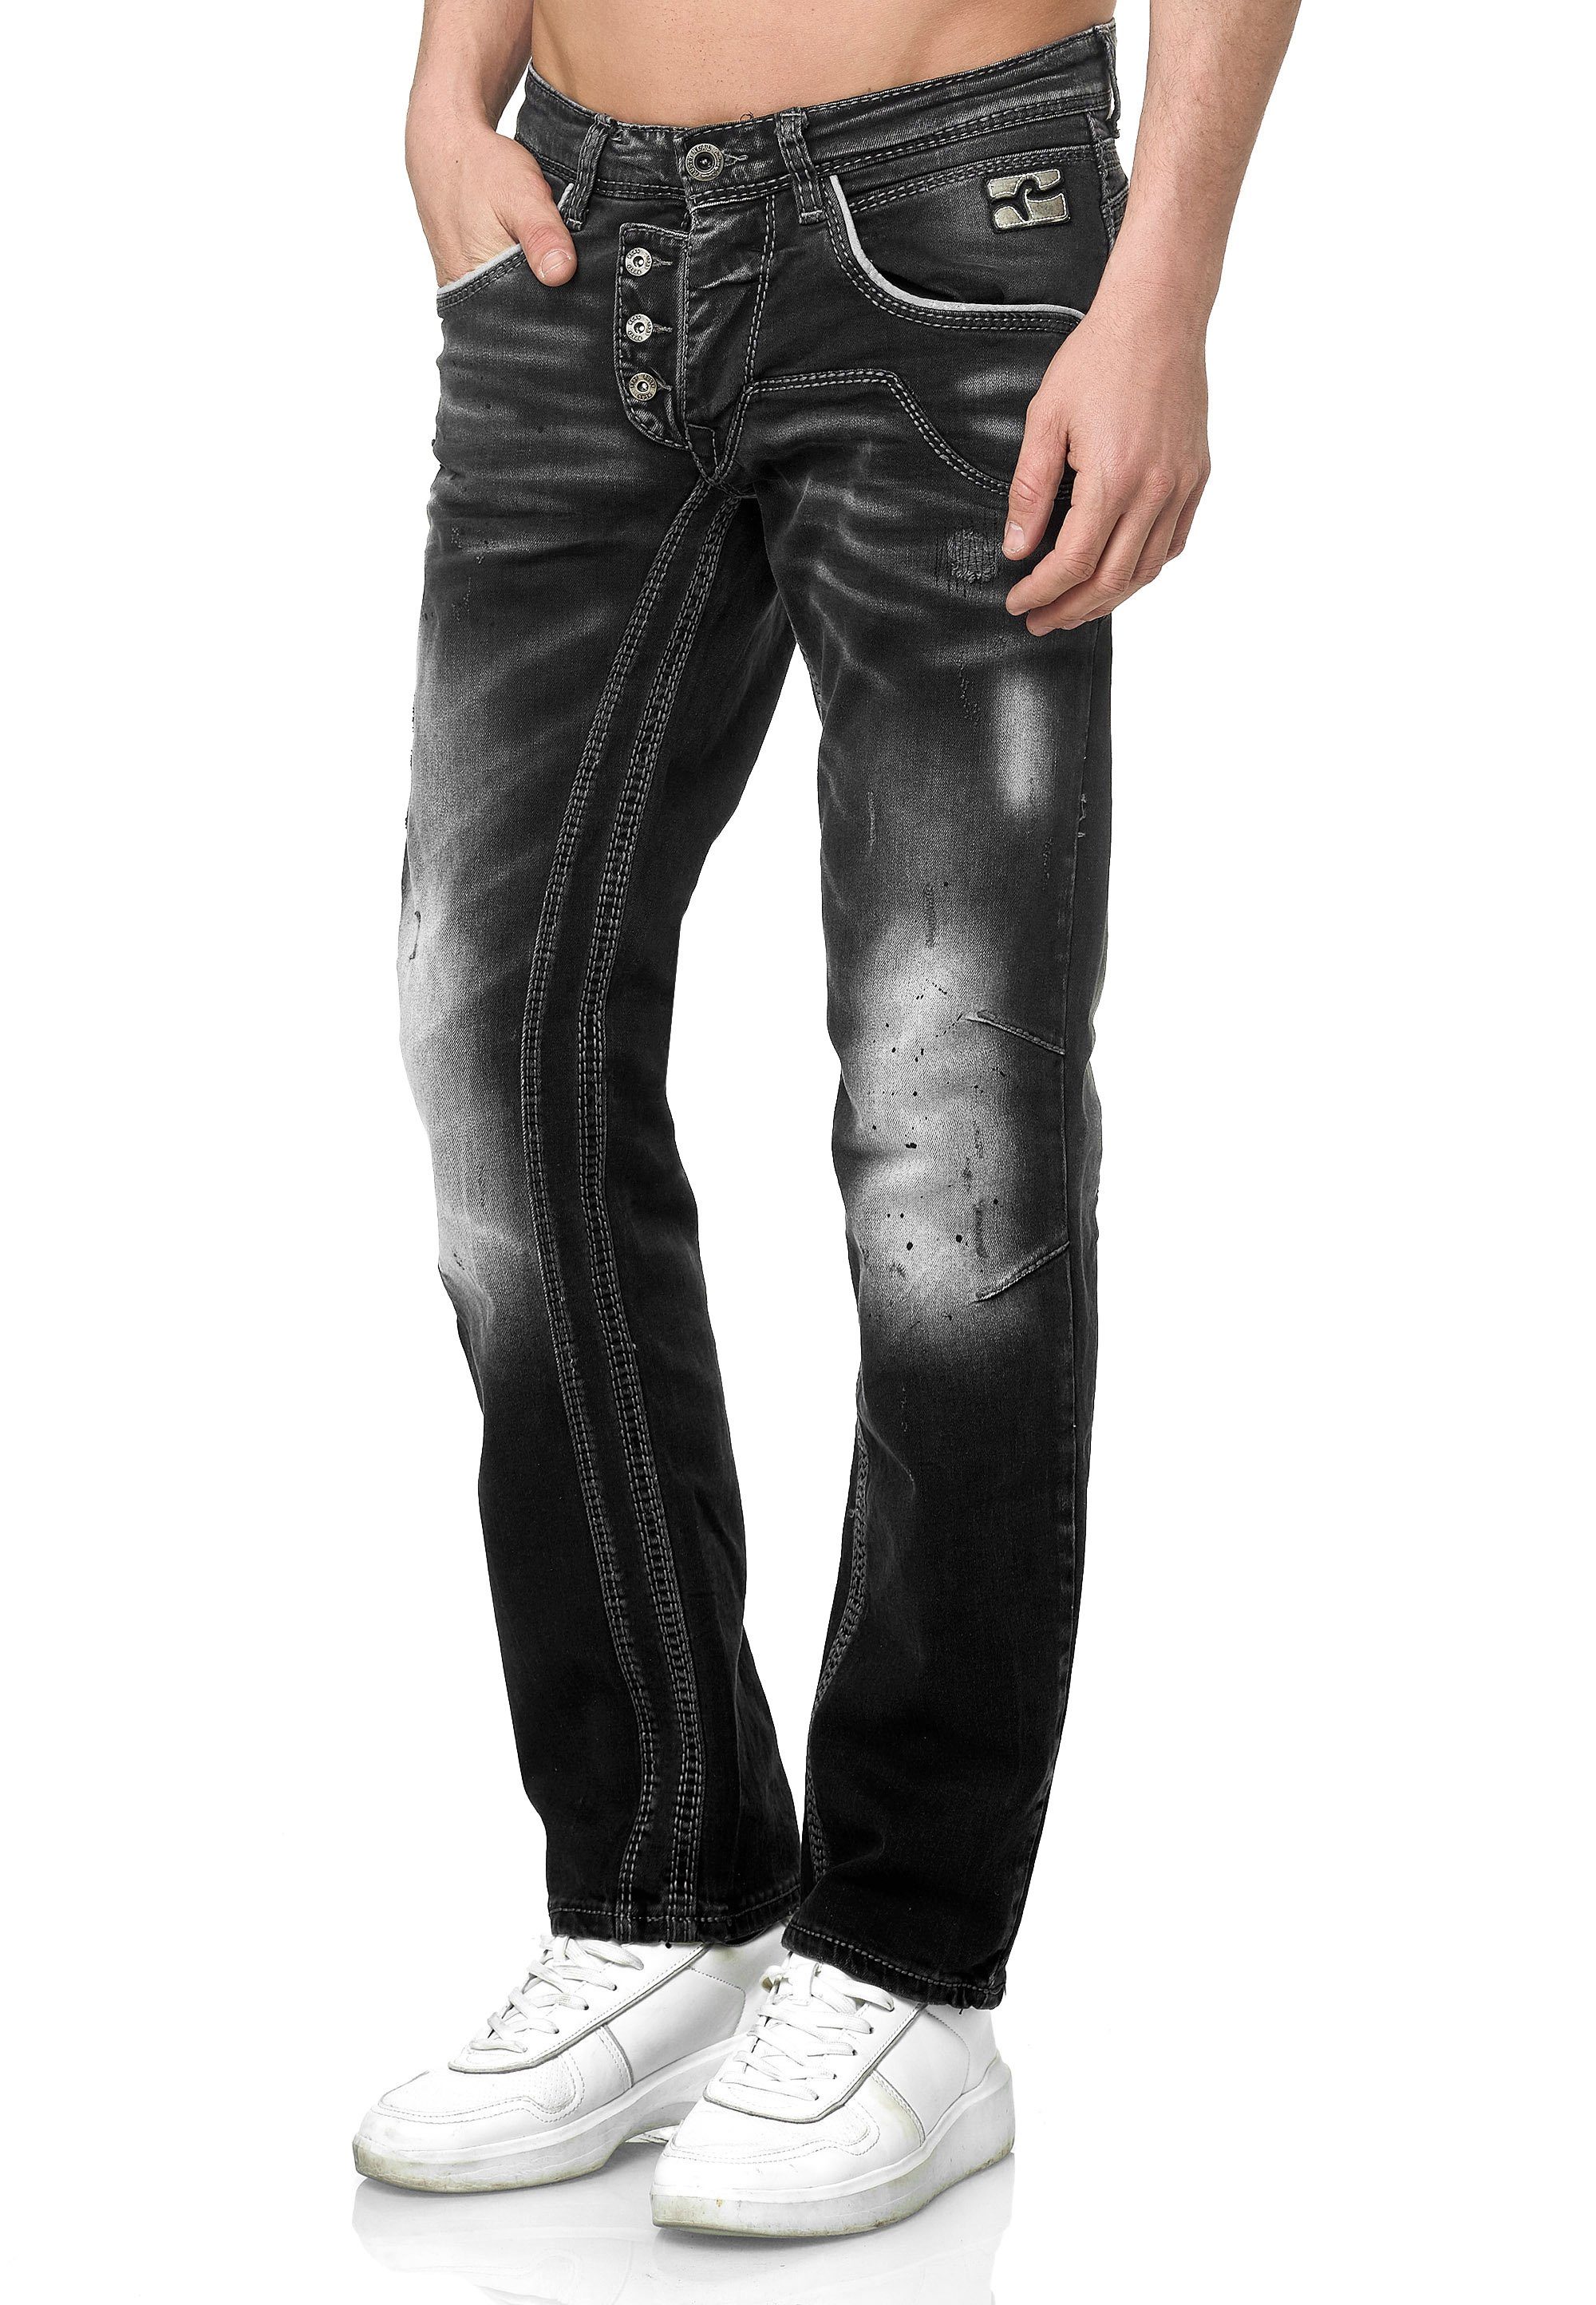 Rusty Neal Straight-Jeans im Fit-Schnitt Straight bequemen